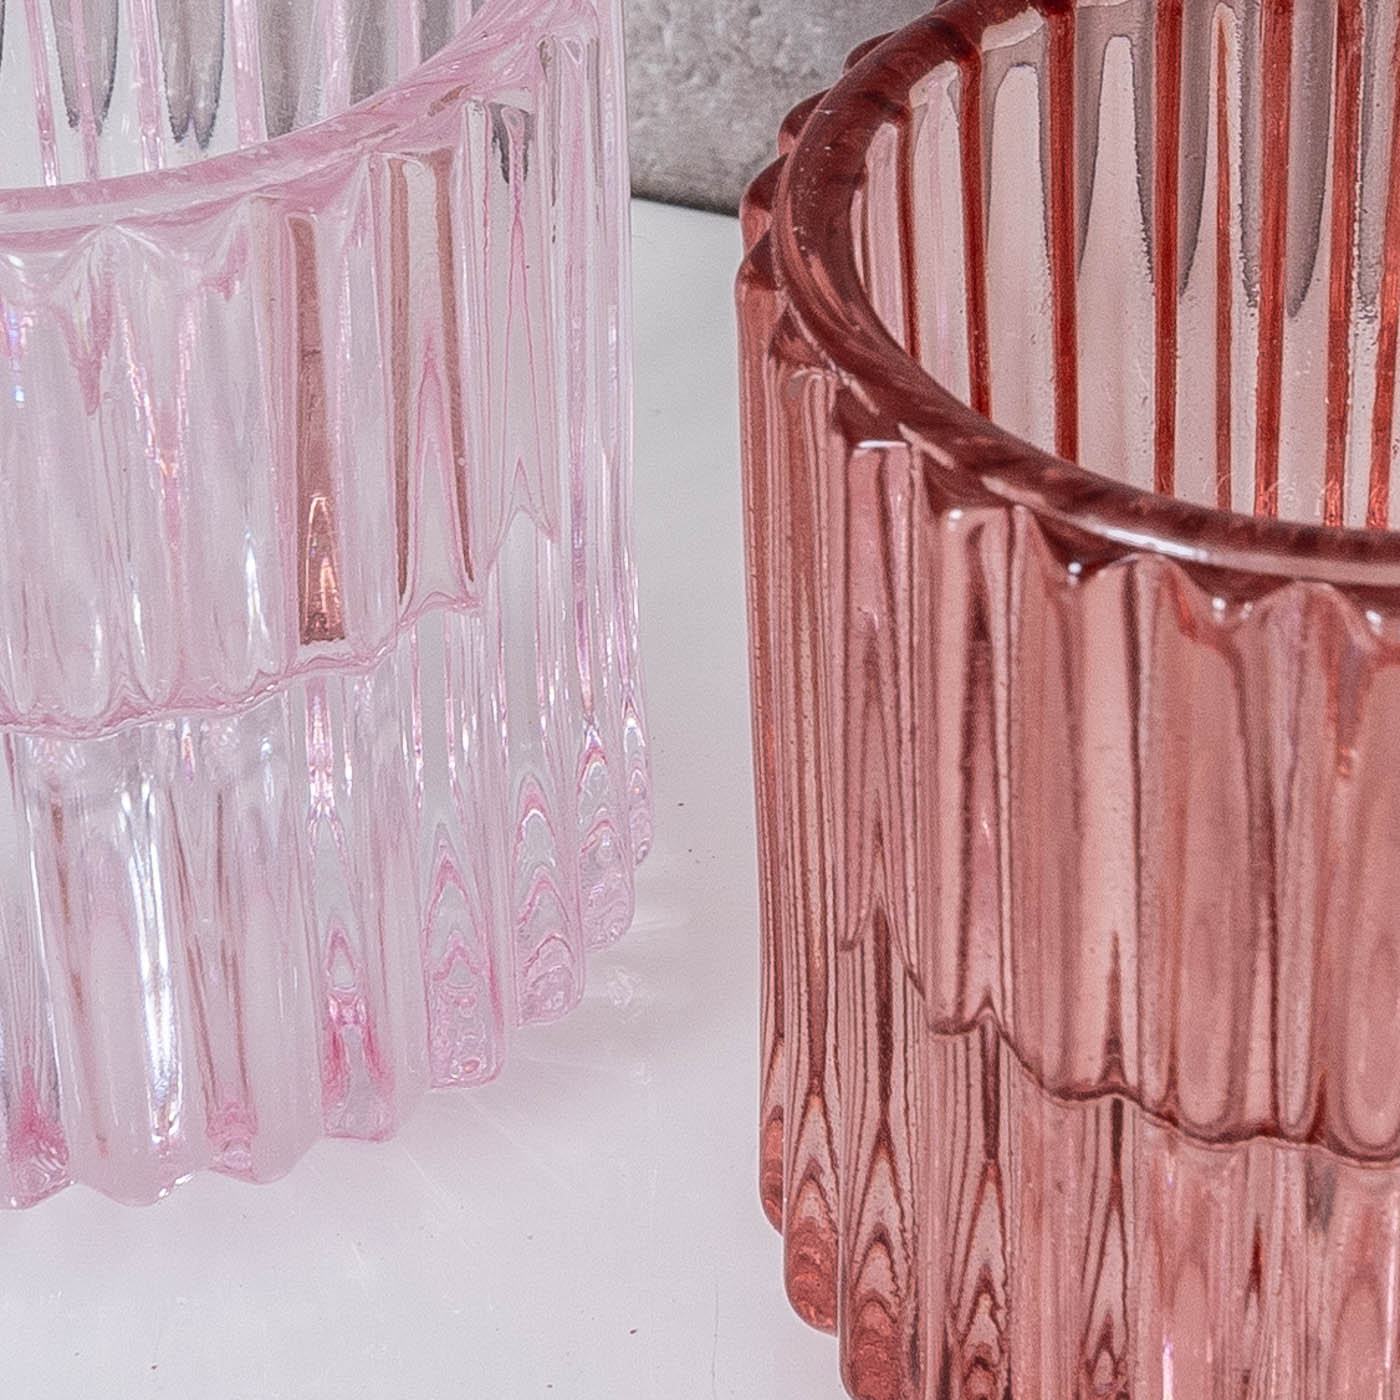 2er Set Kerzenständer für Stabkerzen Glas Rosa Pink 2in1 Kerzenhalter Tischdeko